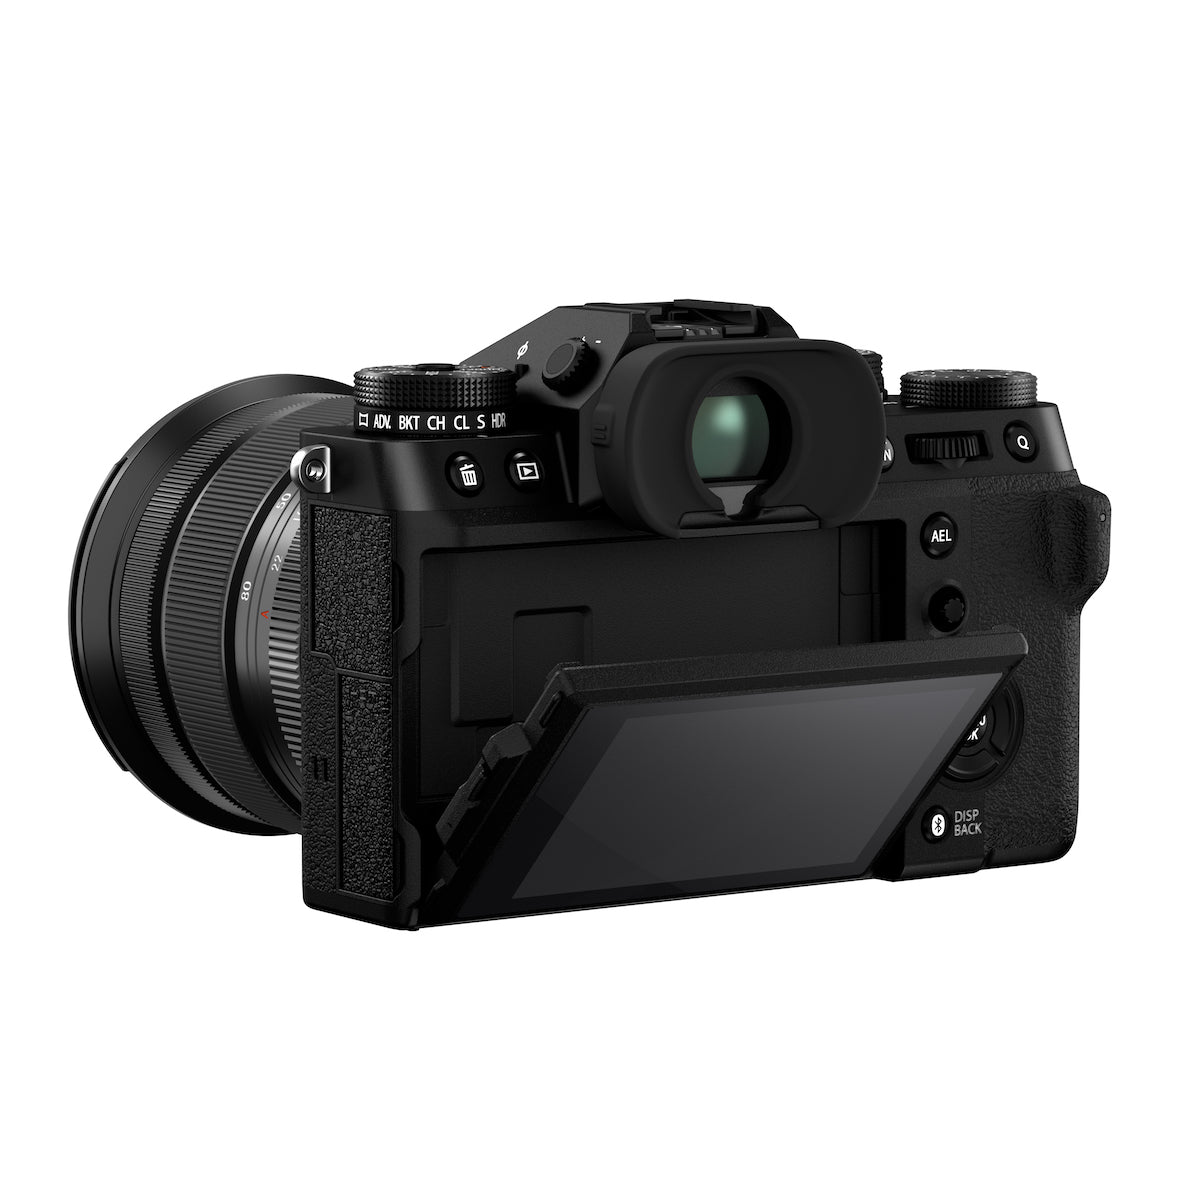 Fujifilm X-T5 Digital Camera w/16-80mm Lens Kit (Black)